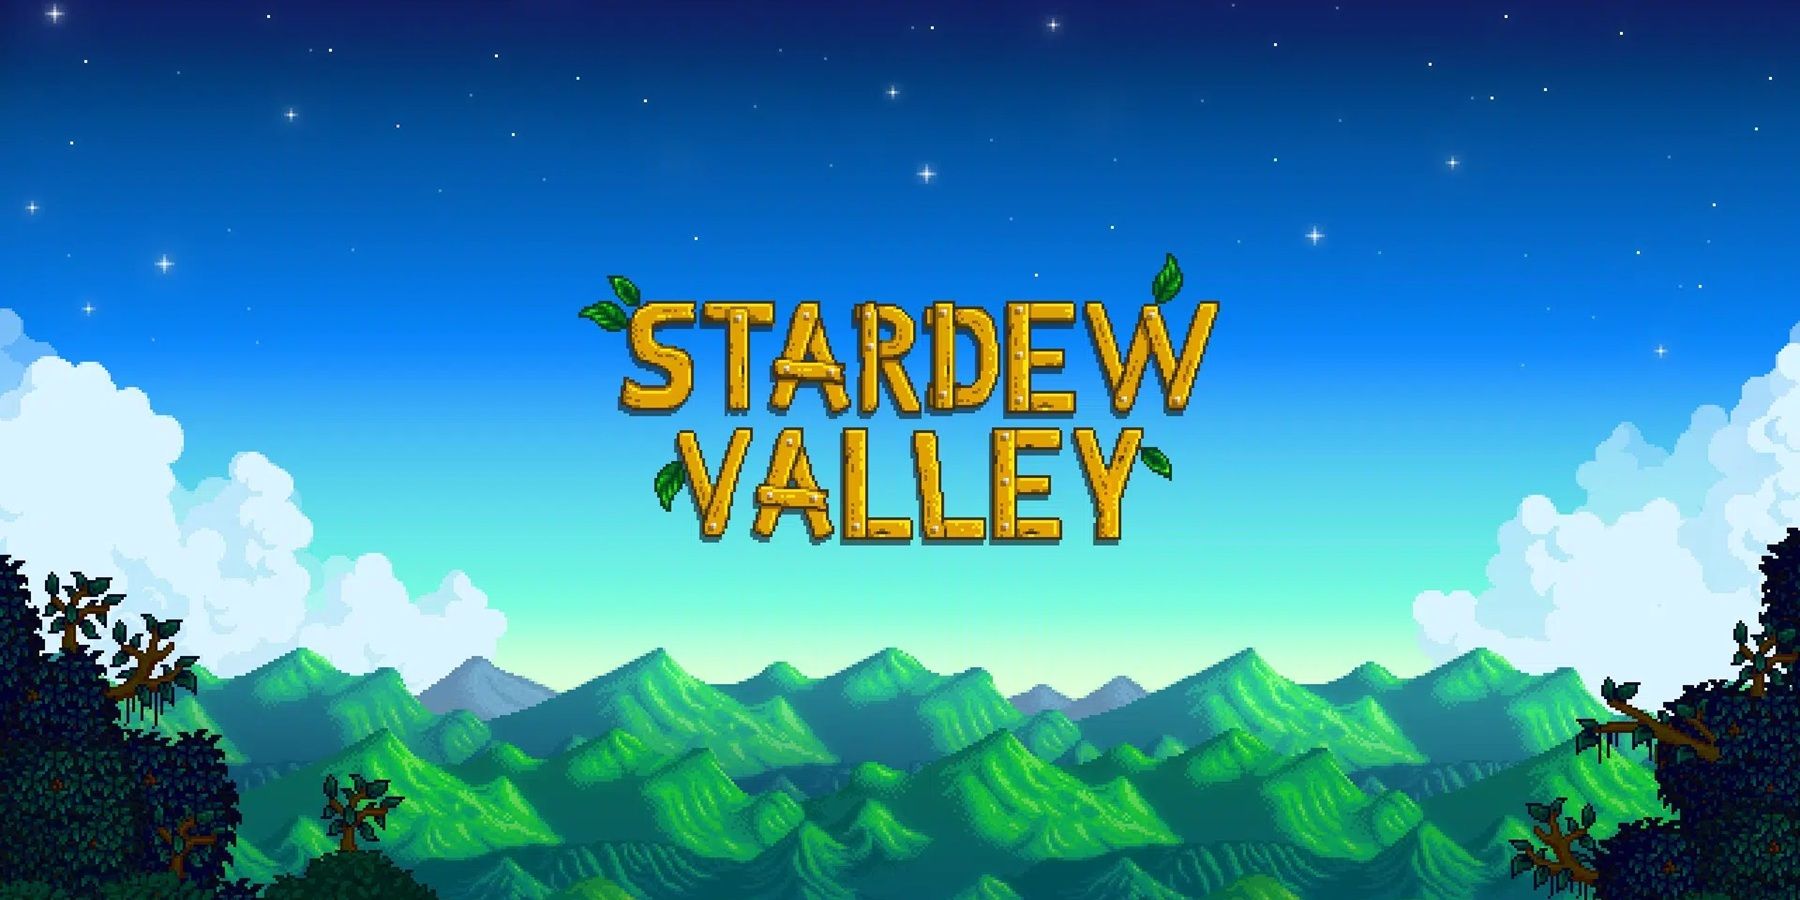 stardew valley main title art.